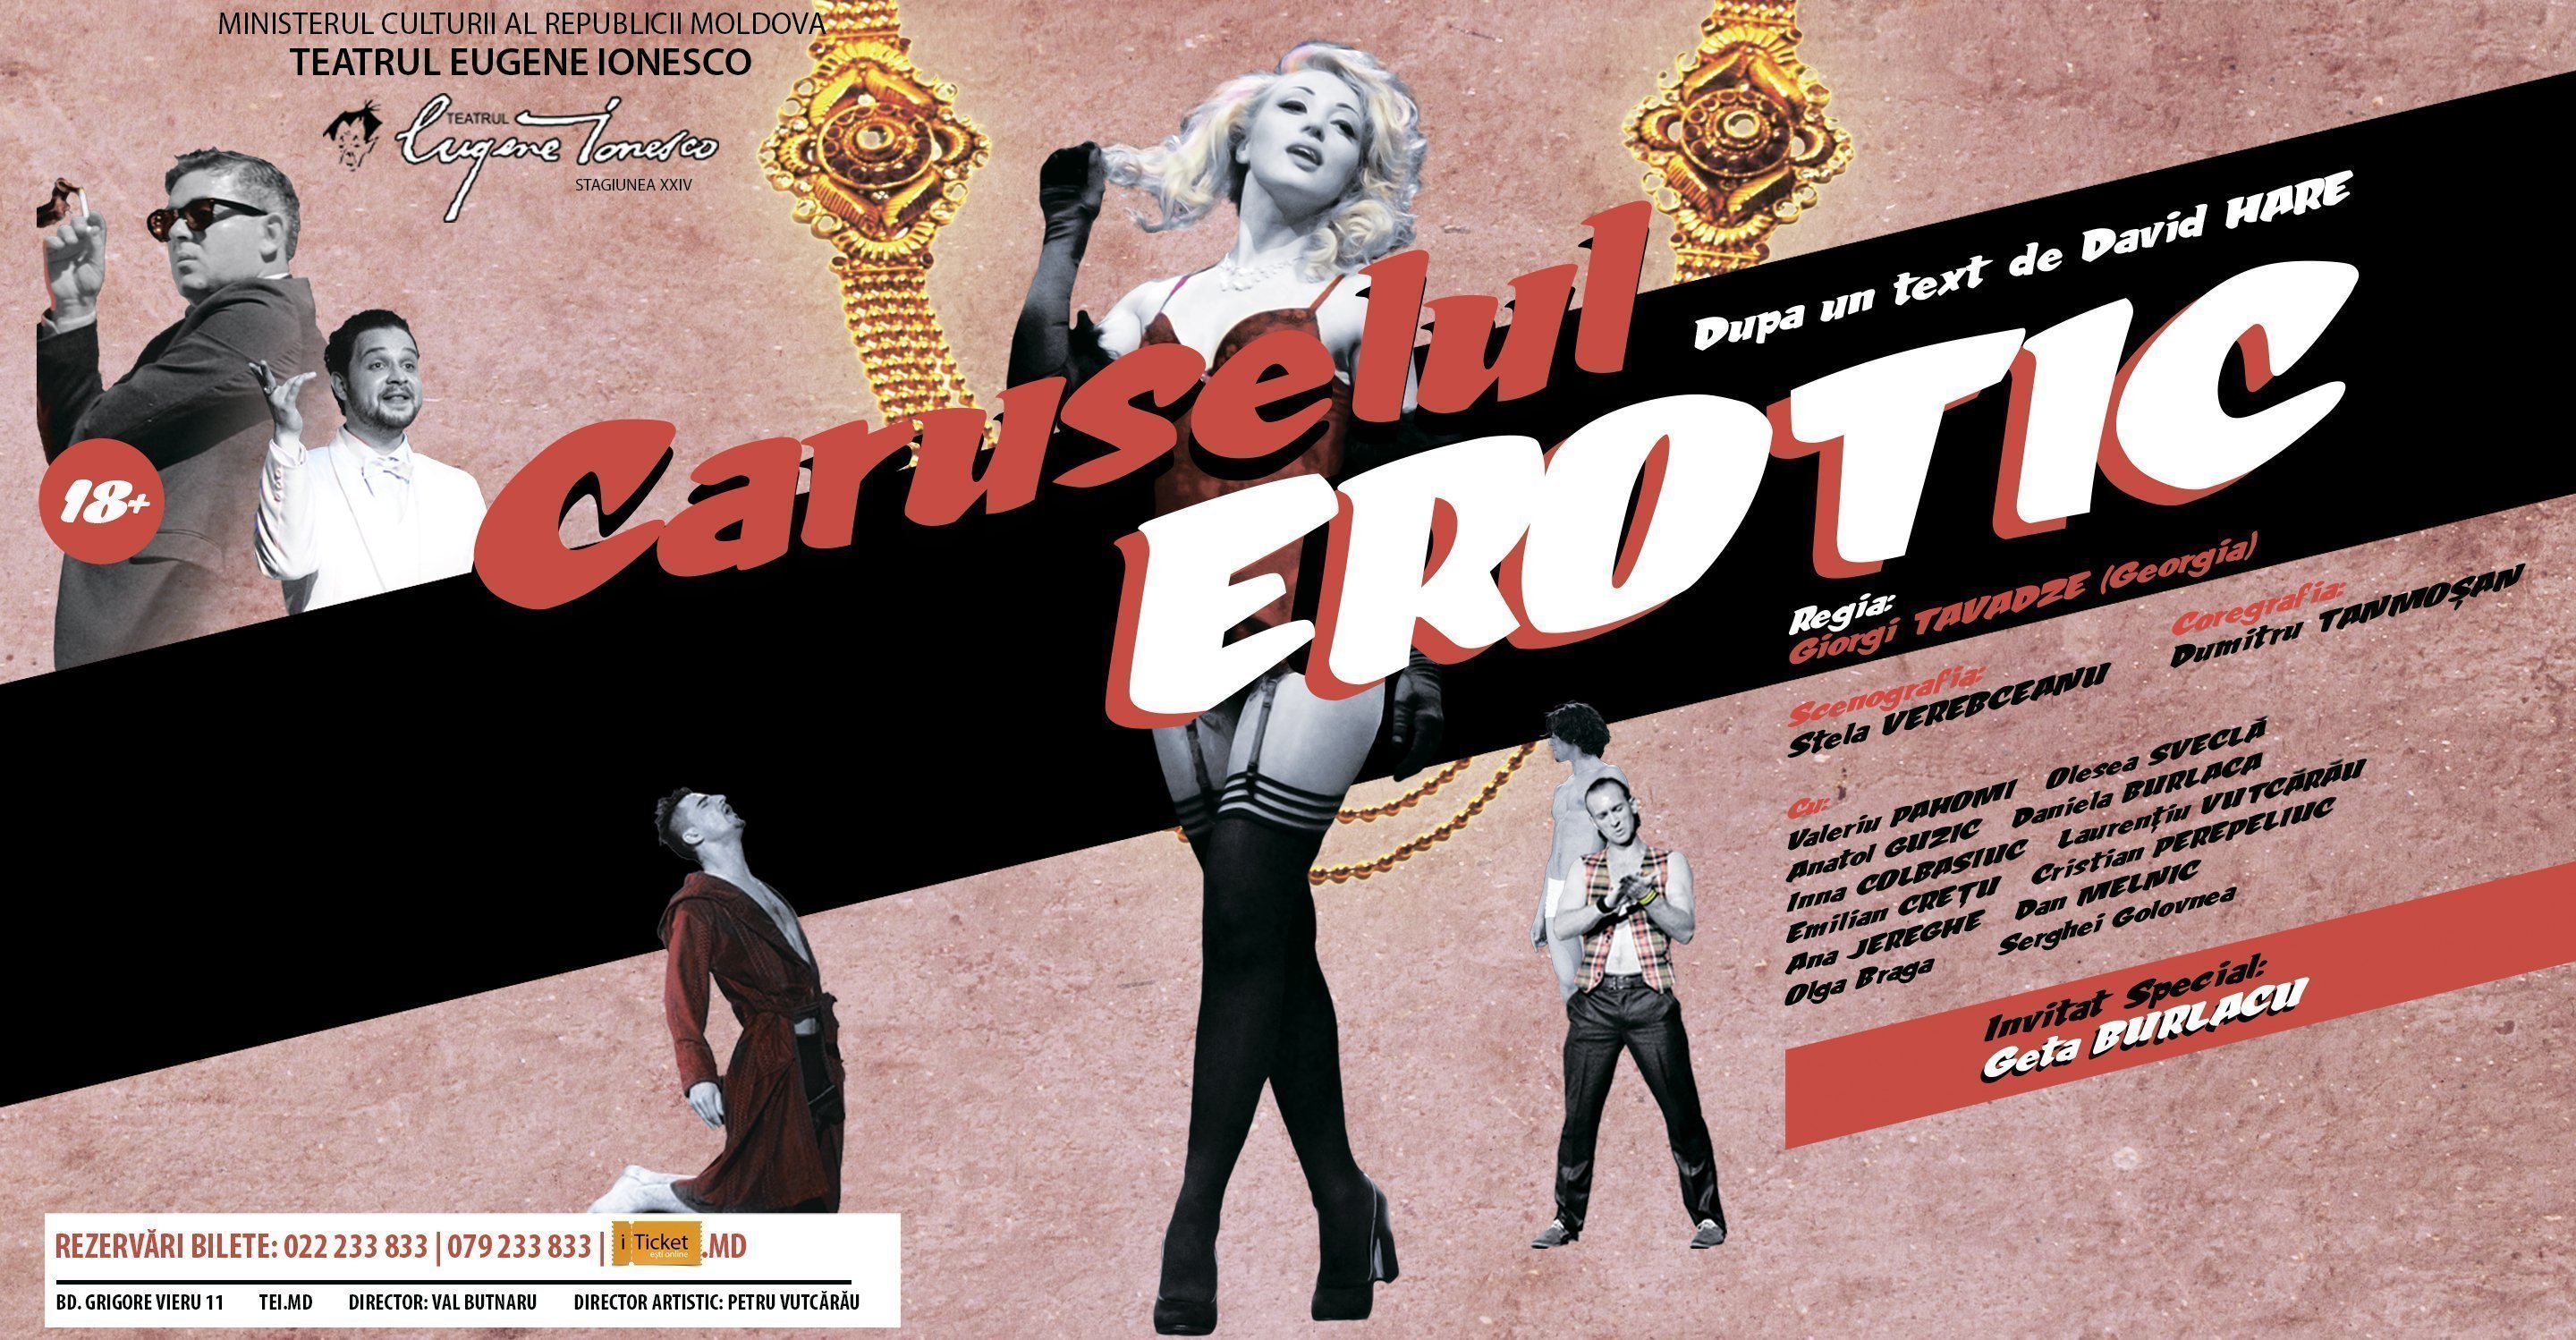 Caruselul Erotic(martie 2015)